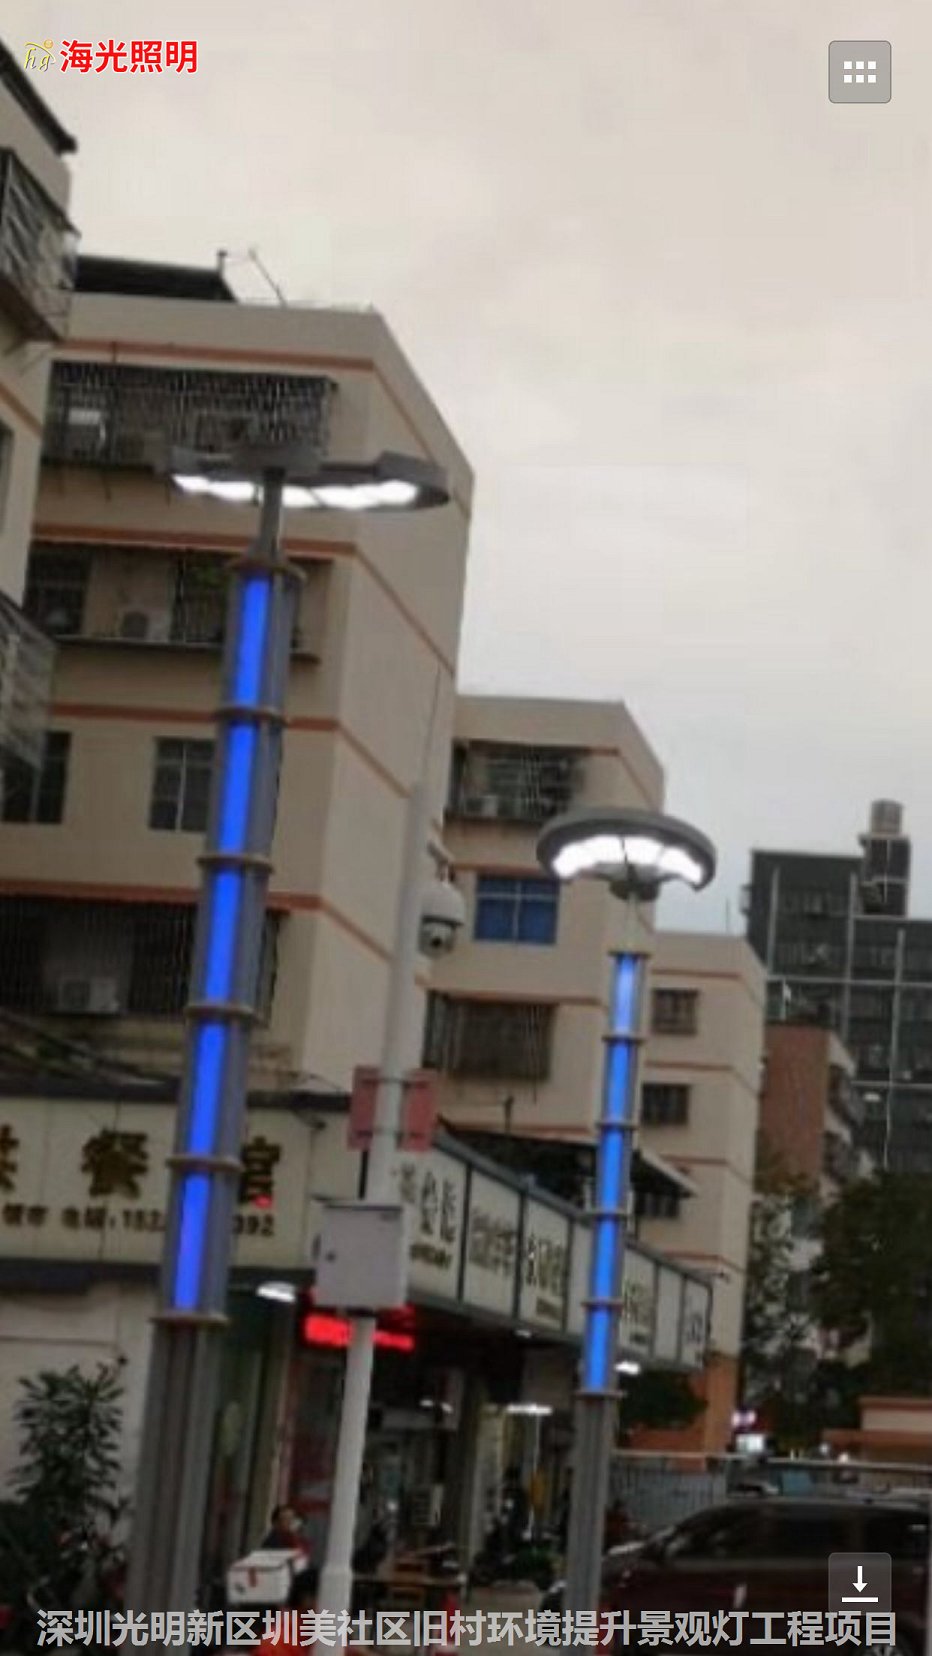 深圳市光明新區圳美社區舊村環境提升景觀燈工程項目